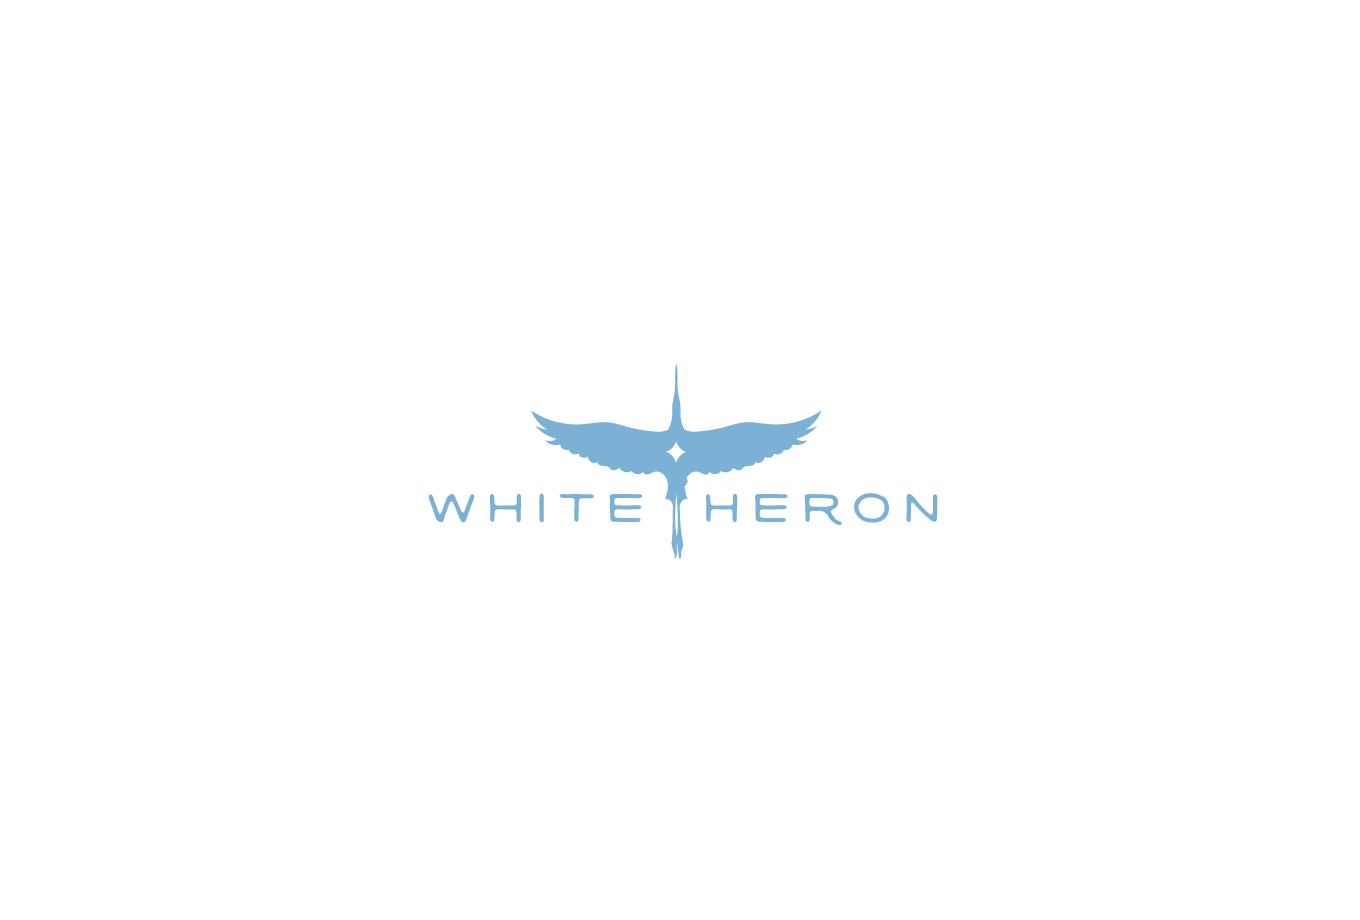 Heron Logo - White Heron Logo Design